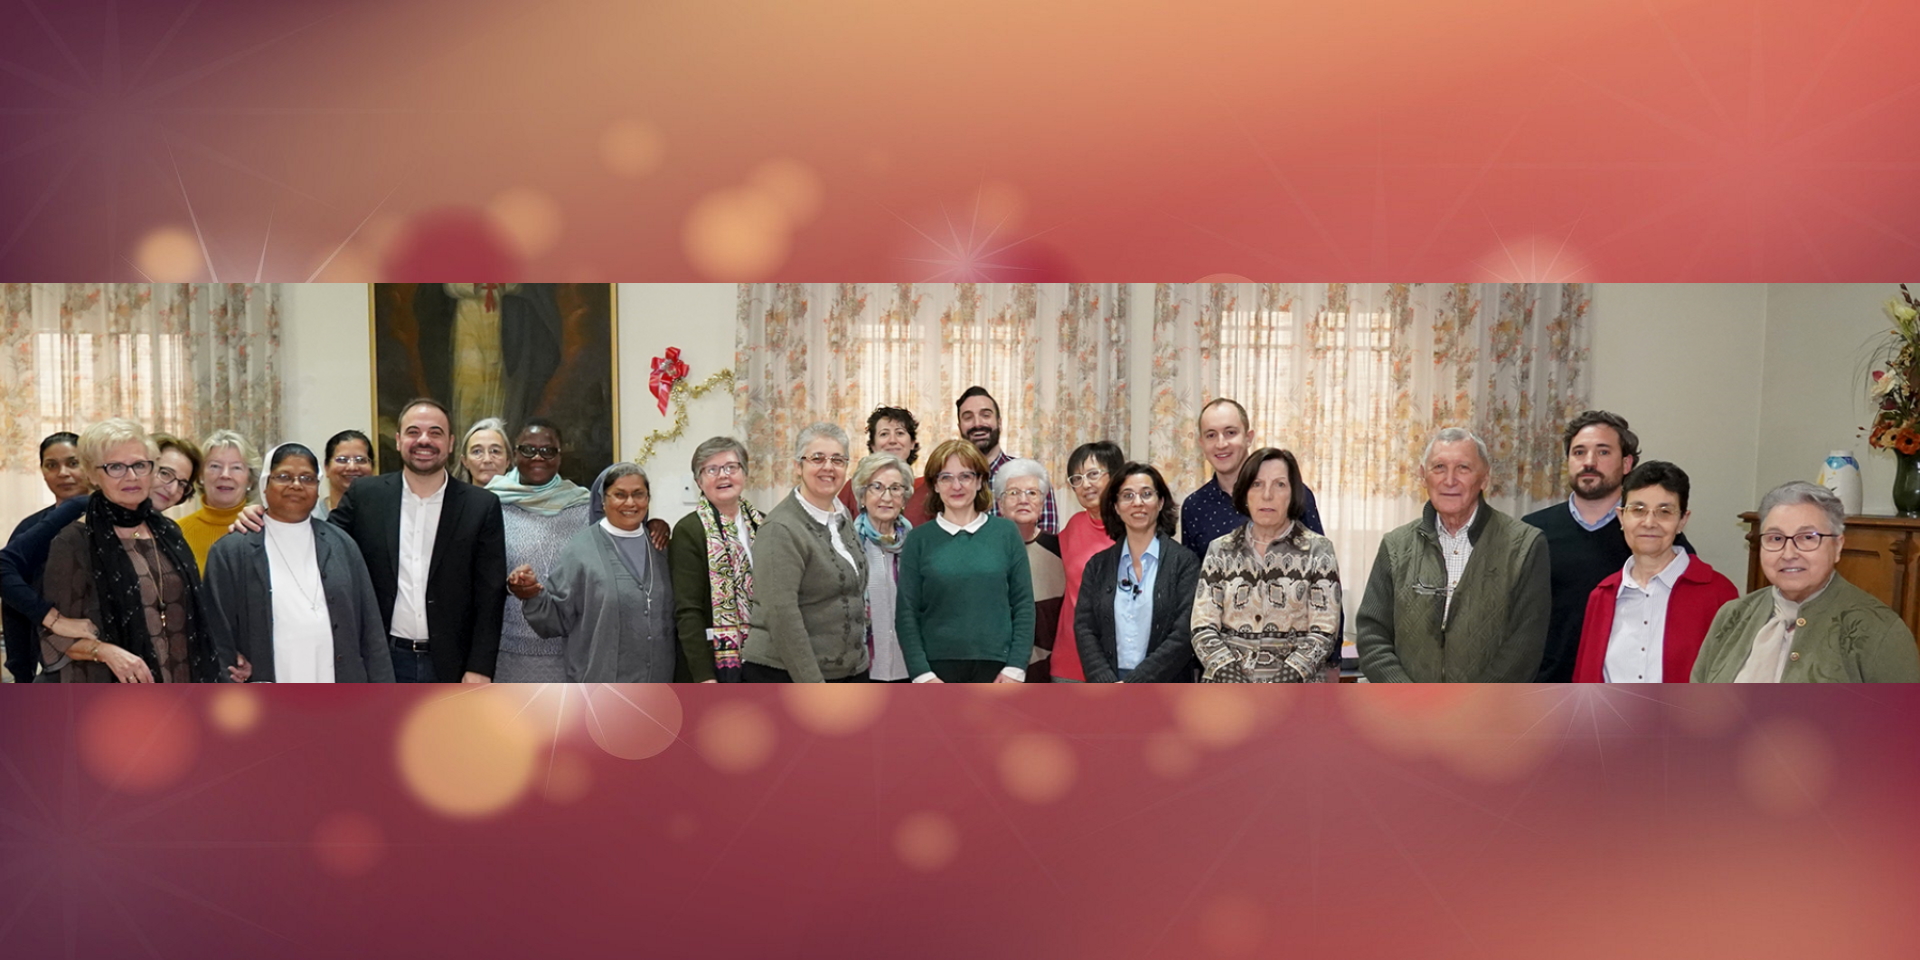 El equipo de Fundación Juan Bonal os desea Feliz Navidad